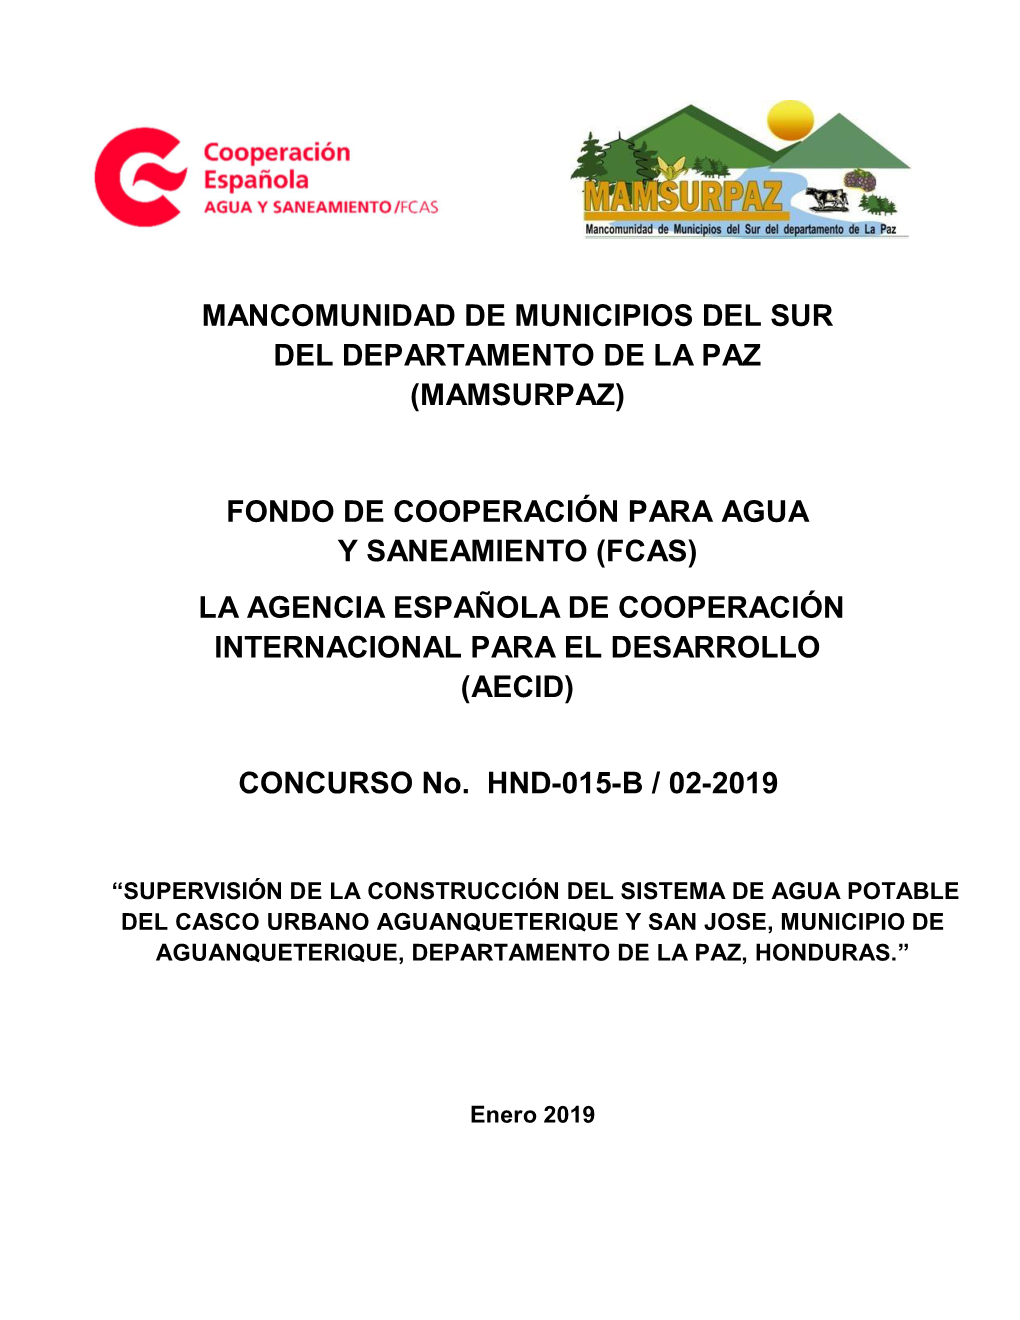 Mancomunidad De Municipios Del Sur Del Departamento De La Paz (Mamsurpaz)